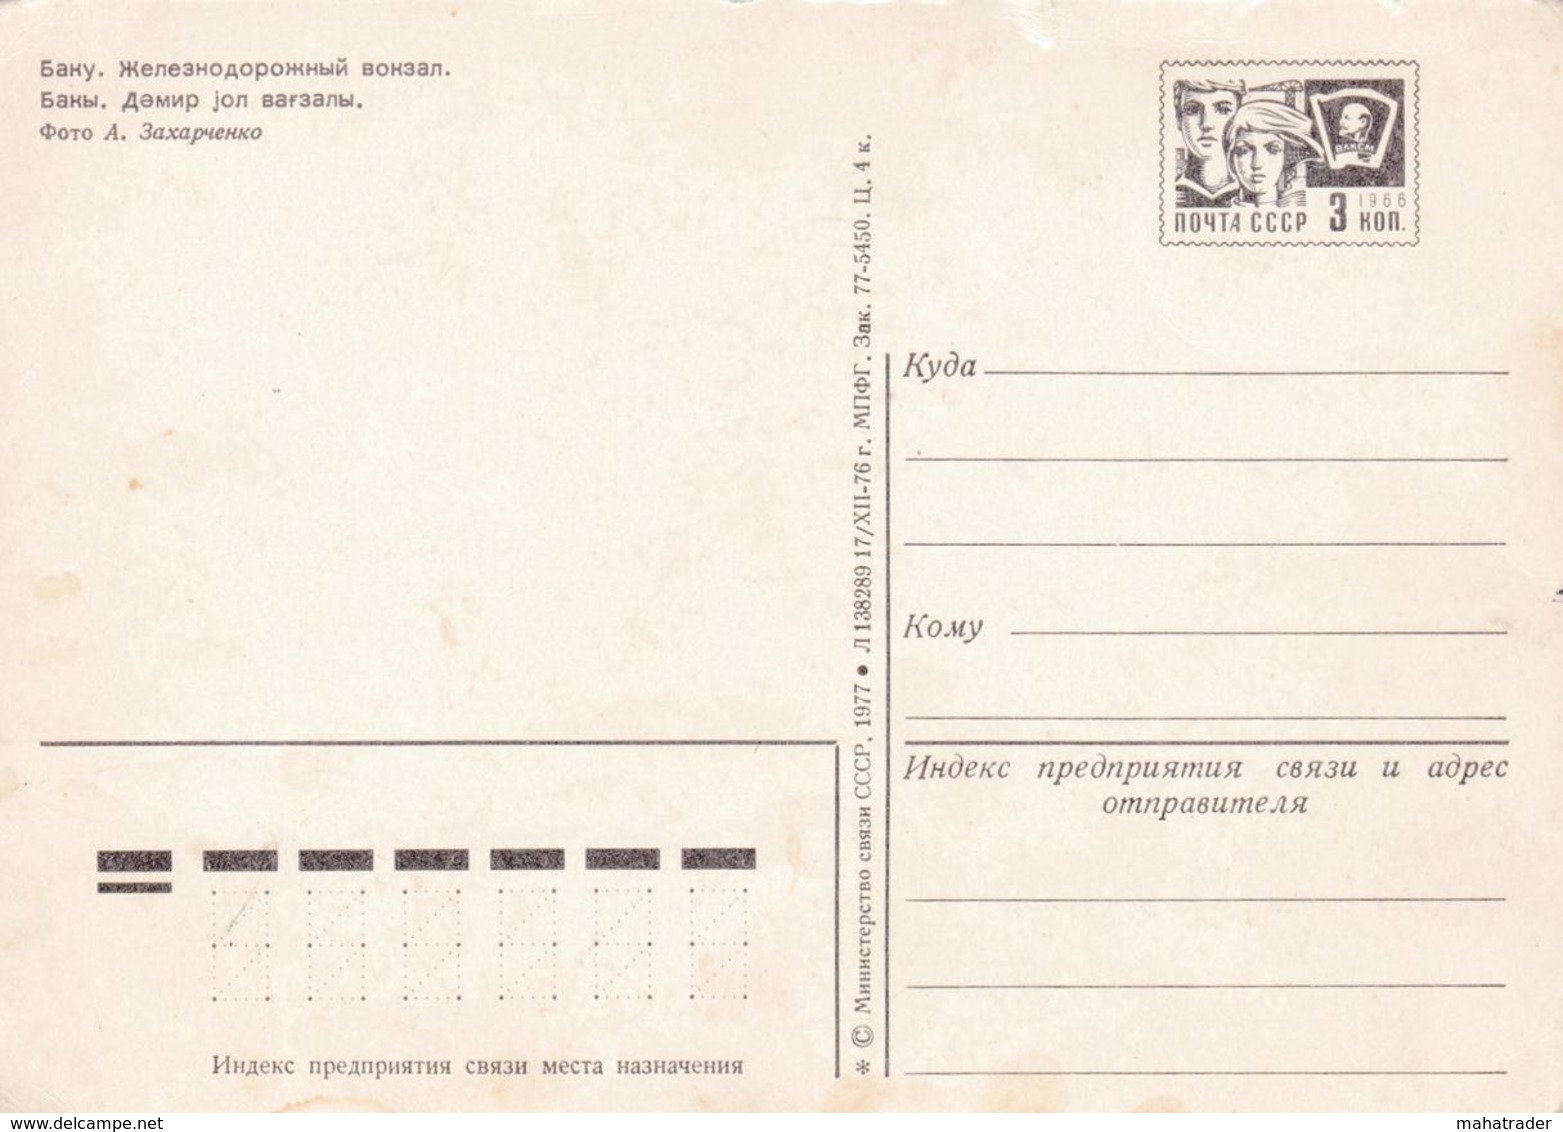 Azerbaijan - Baku - Railway Station - Printed 1977 / Stationery Stamp - Azerbaigian